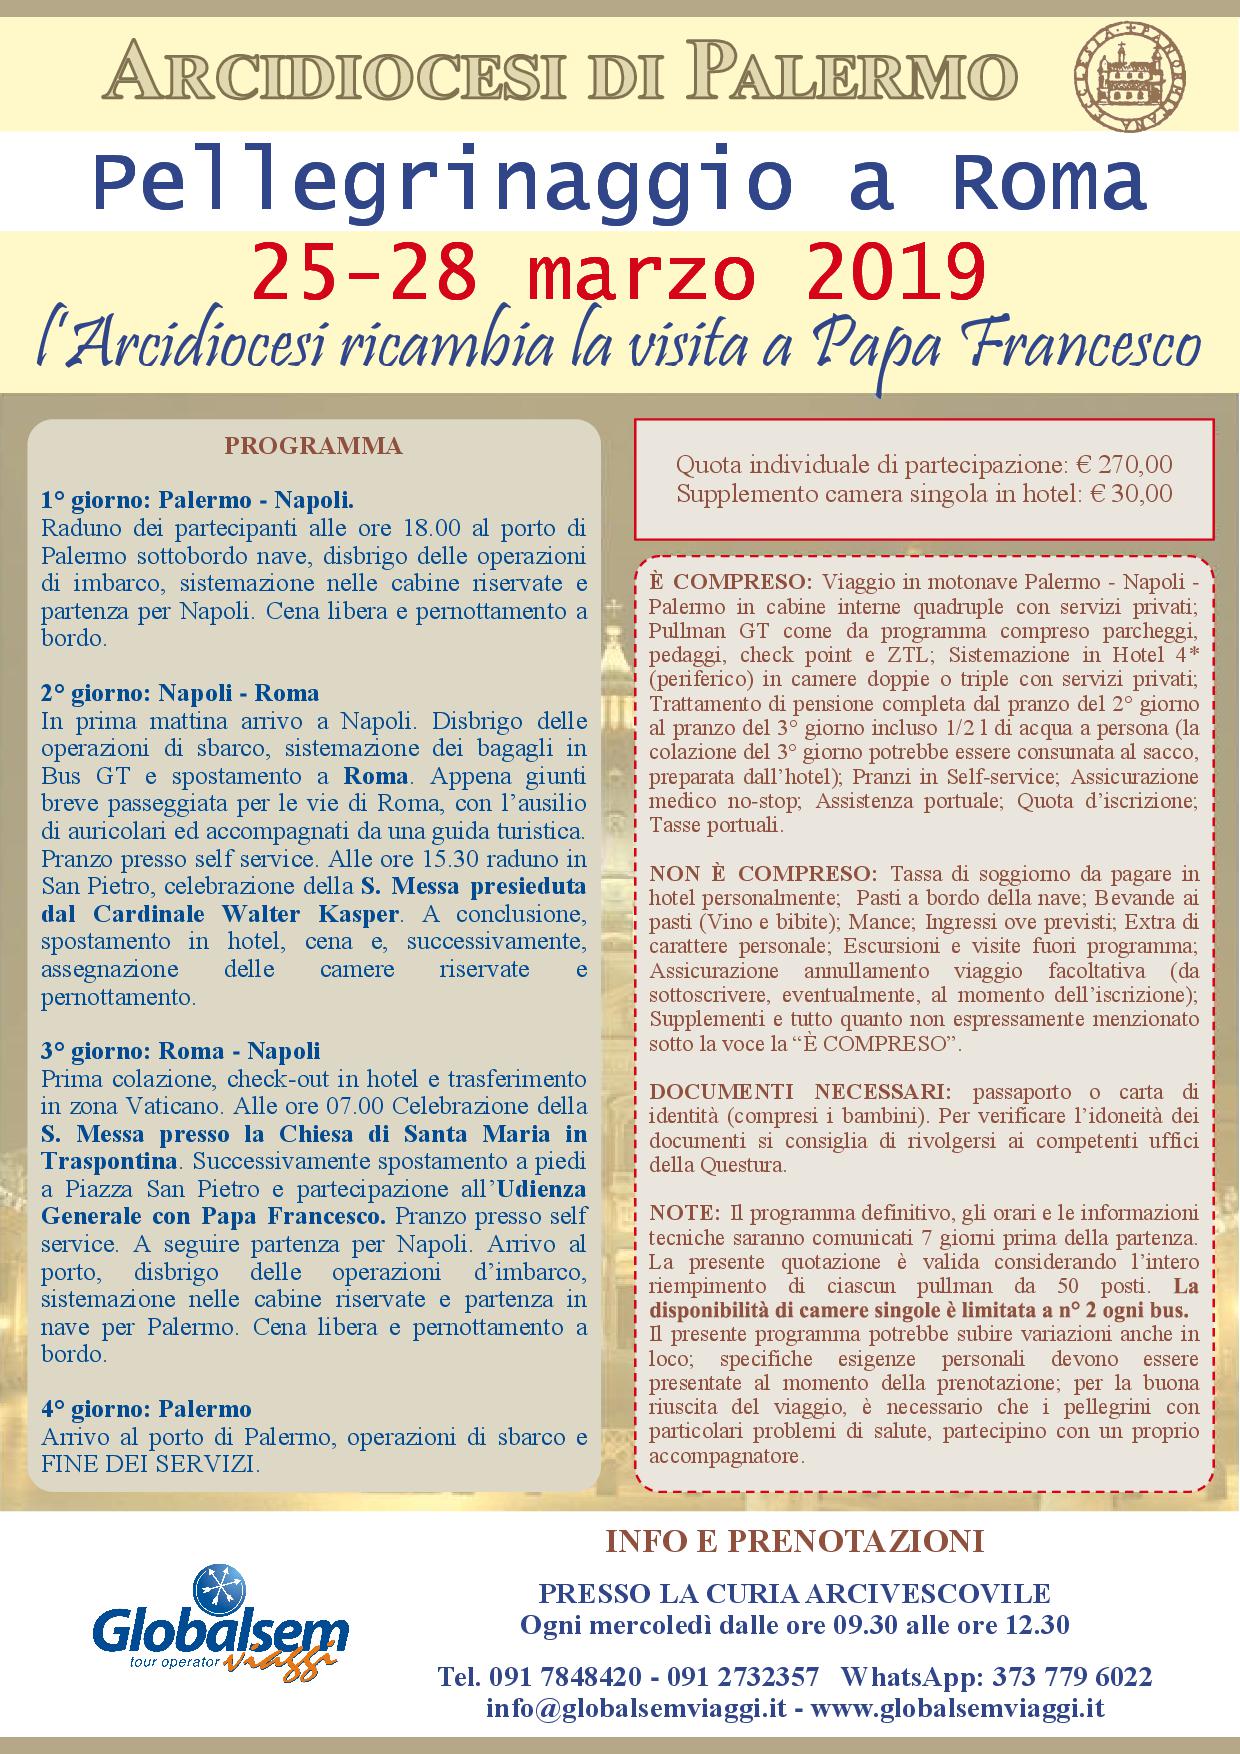 Pellegrinaggio a Roma dal 25 al 28 marzo 2019, la Diocesi di Palermo ricambia la visita a Papa Francesco